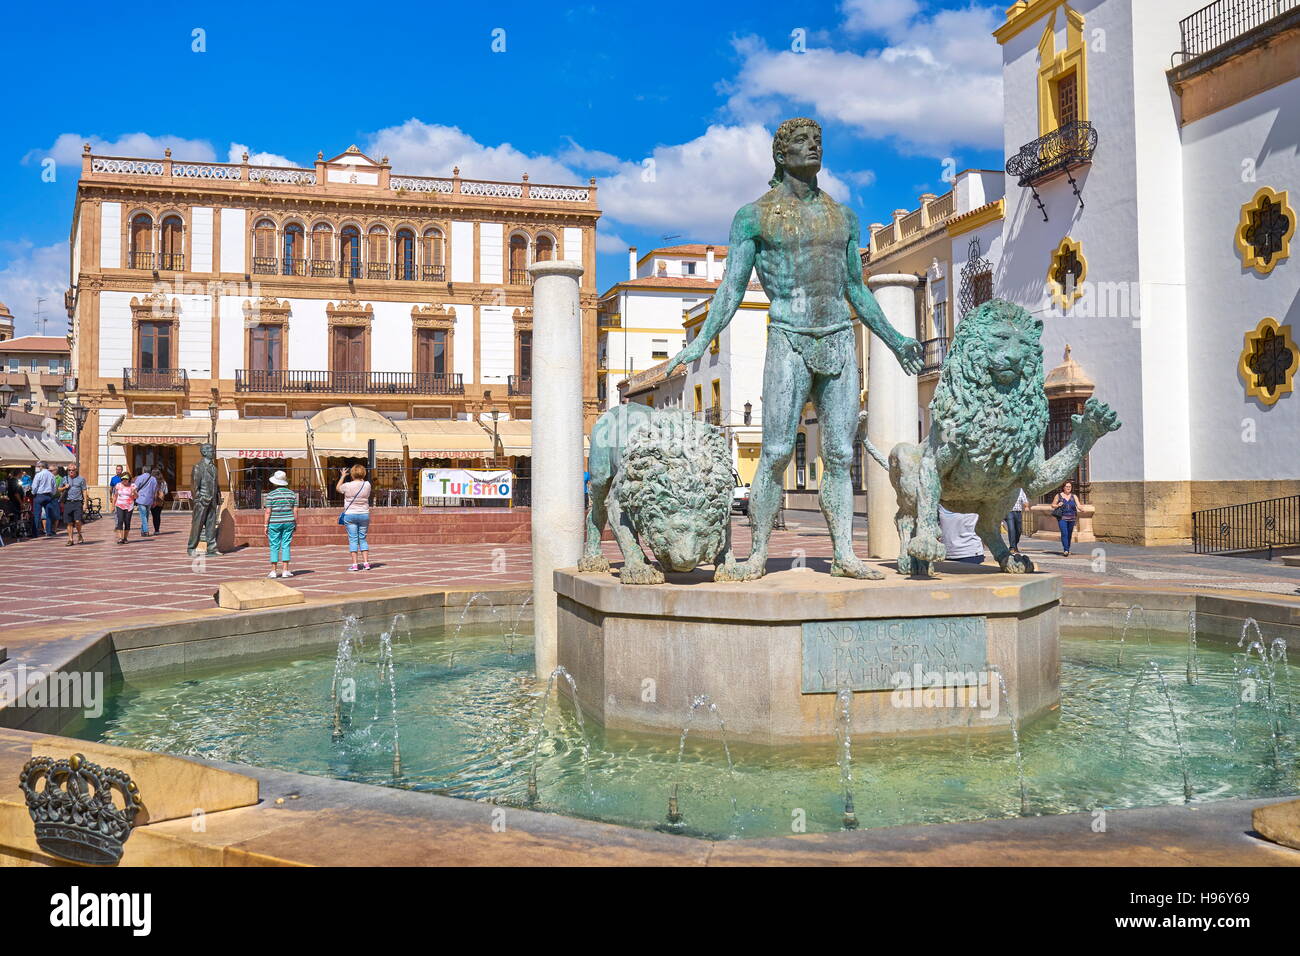 Fountain at Plaza del Socorro, Ronda, Andalusia, Spain Stock Photo